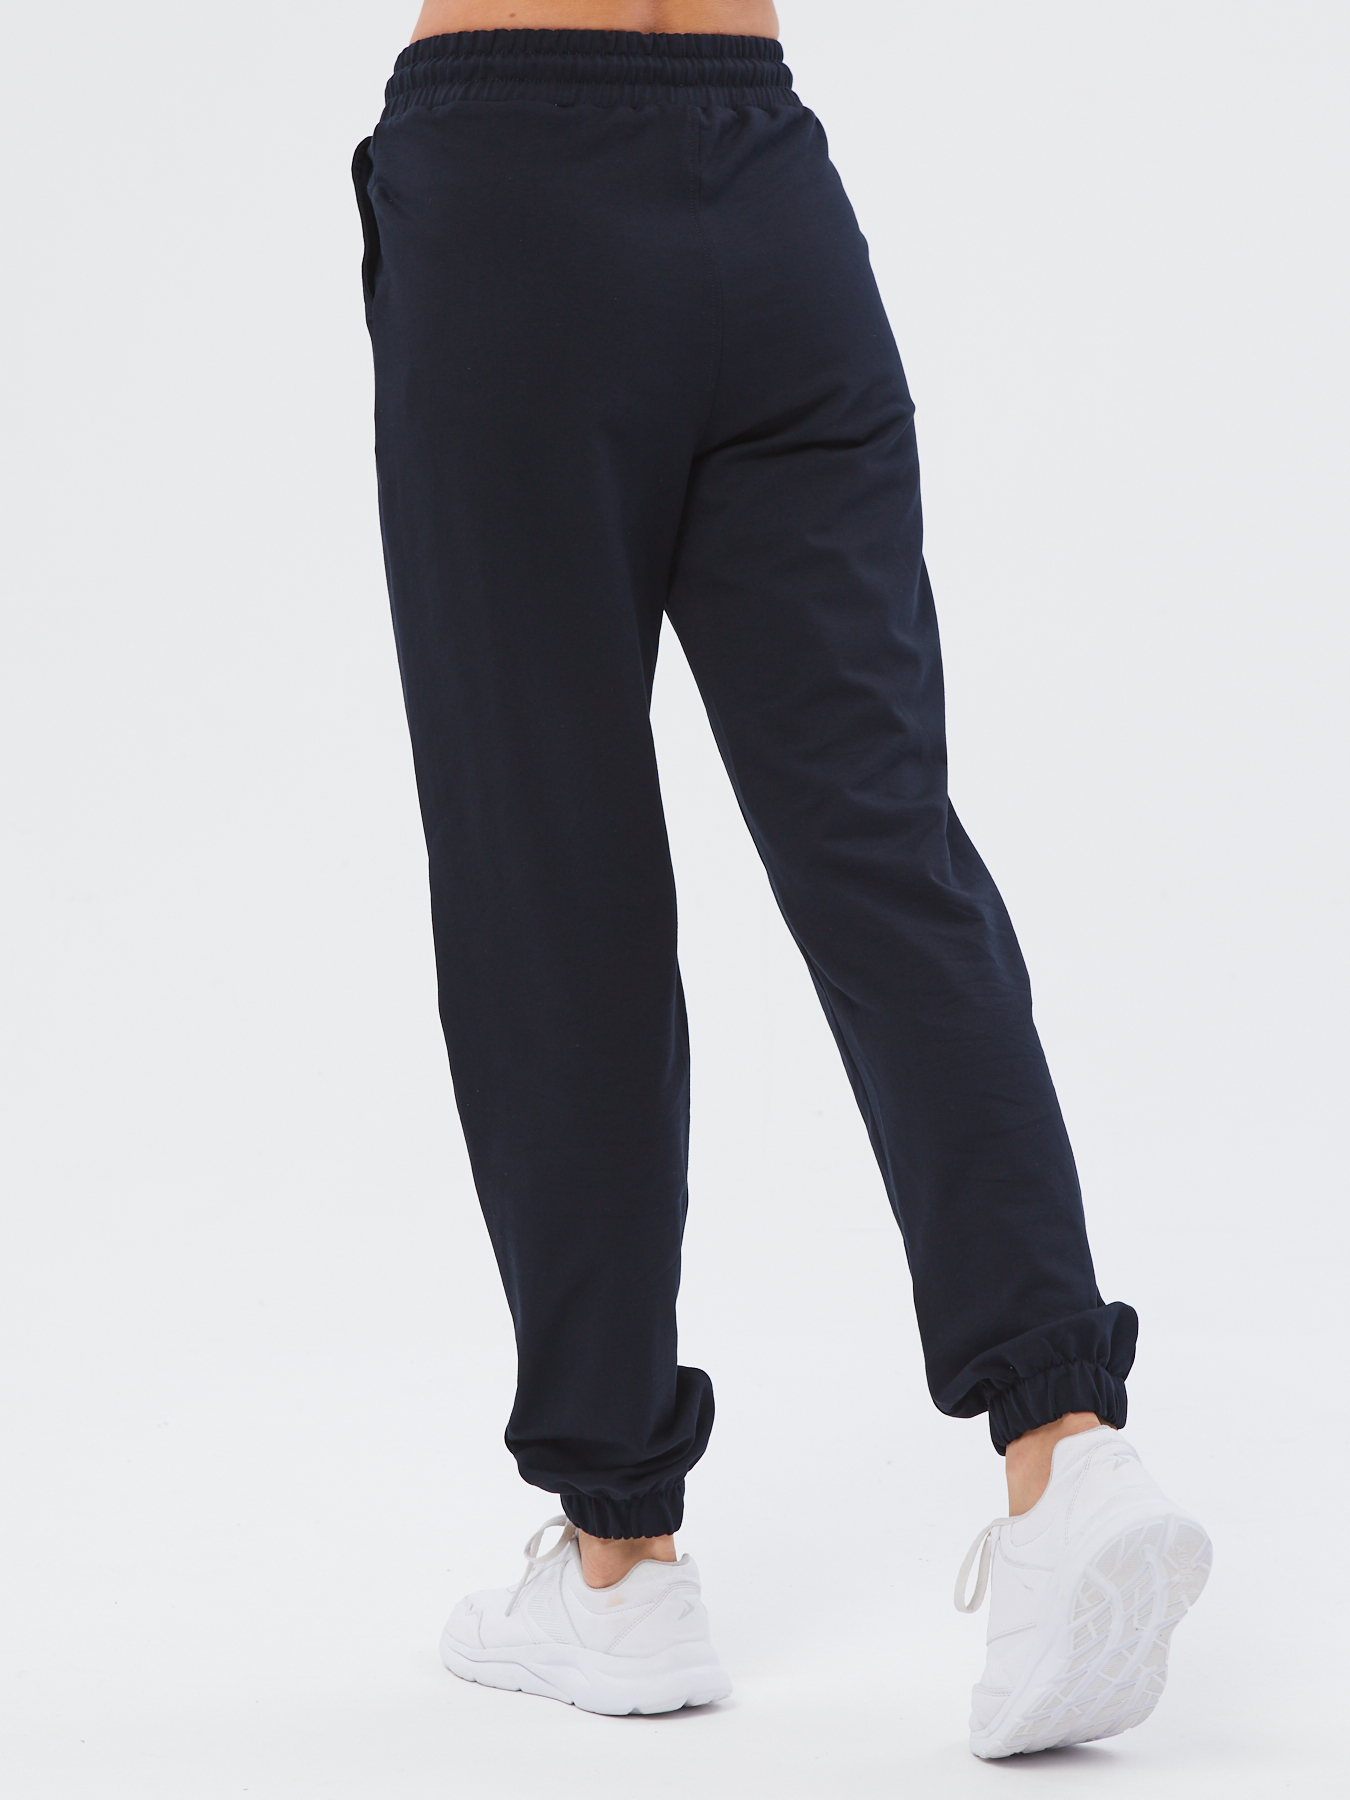 Спортивные брюки женские Still-expert б5 синие 44/165-180